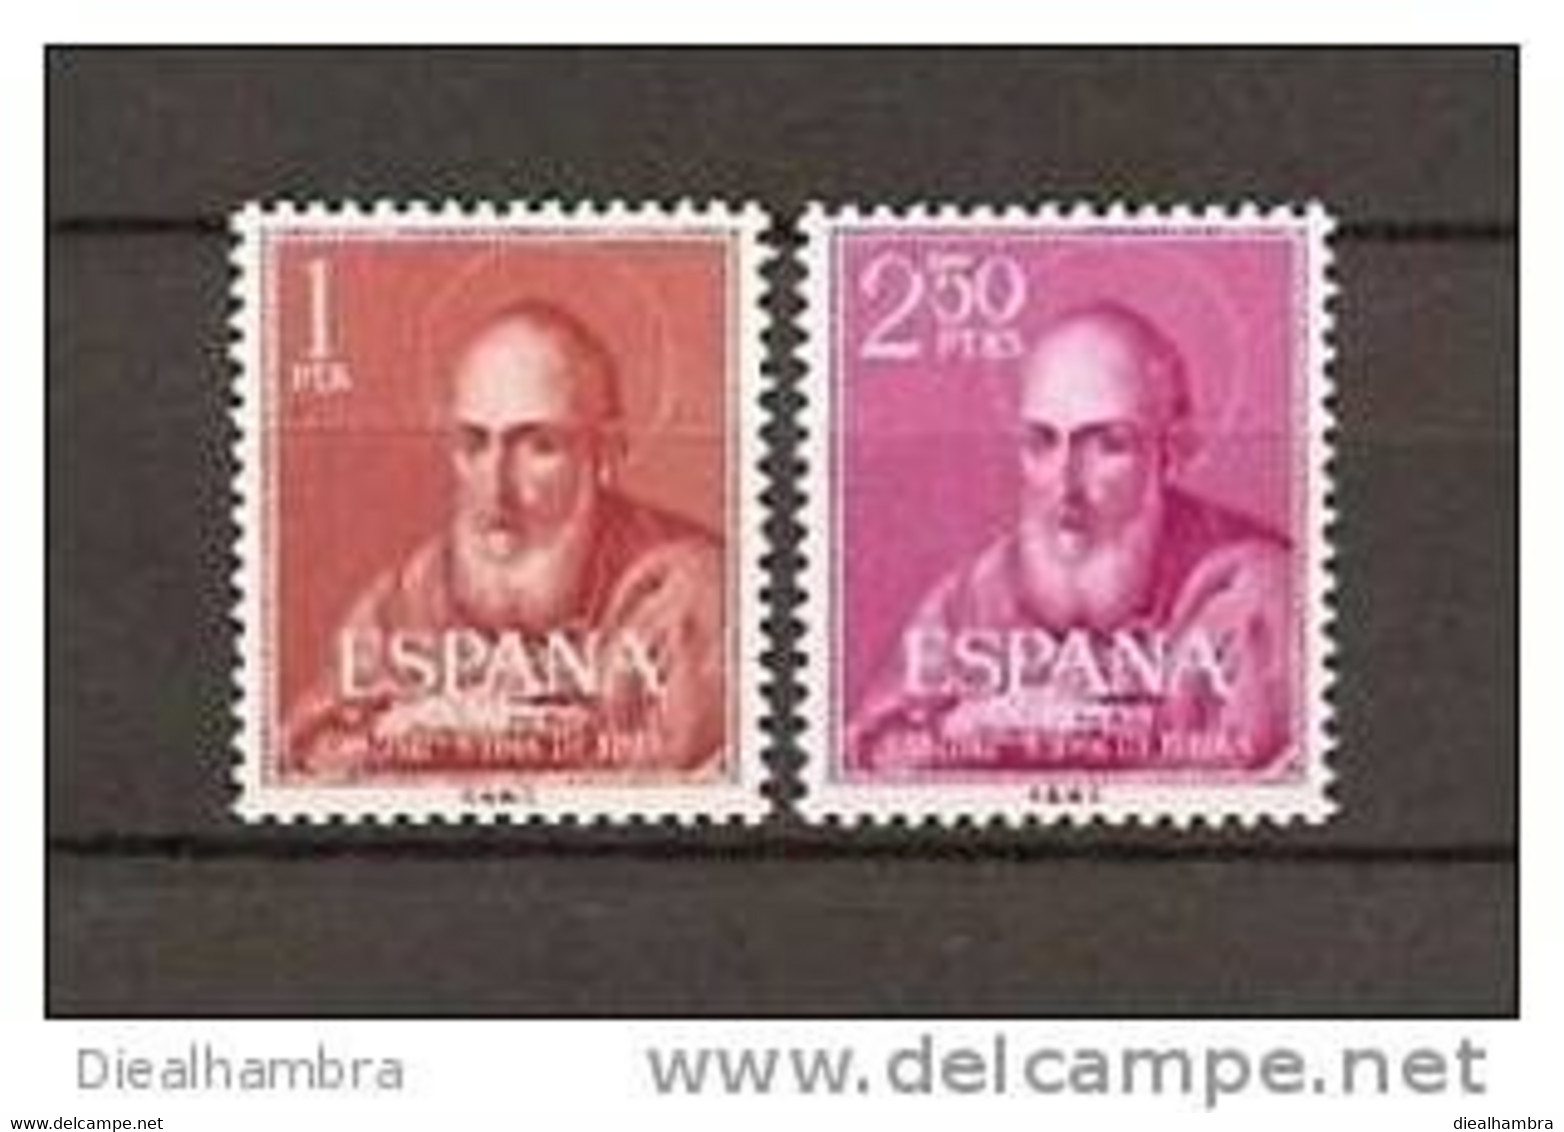 SPAIN ESPAÑA SPANIEN CANONIZACIÓN DEL BEATO JUAN DE RIBERA 1960 / MNH / 1292 - 1293 - Unused Stamps